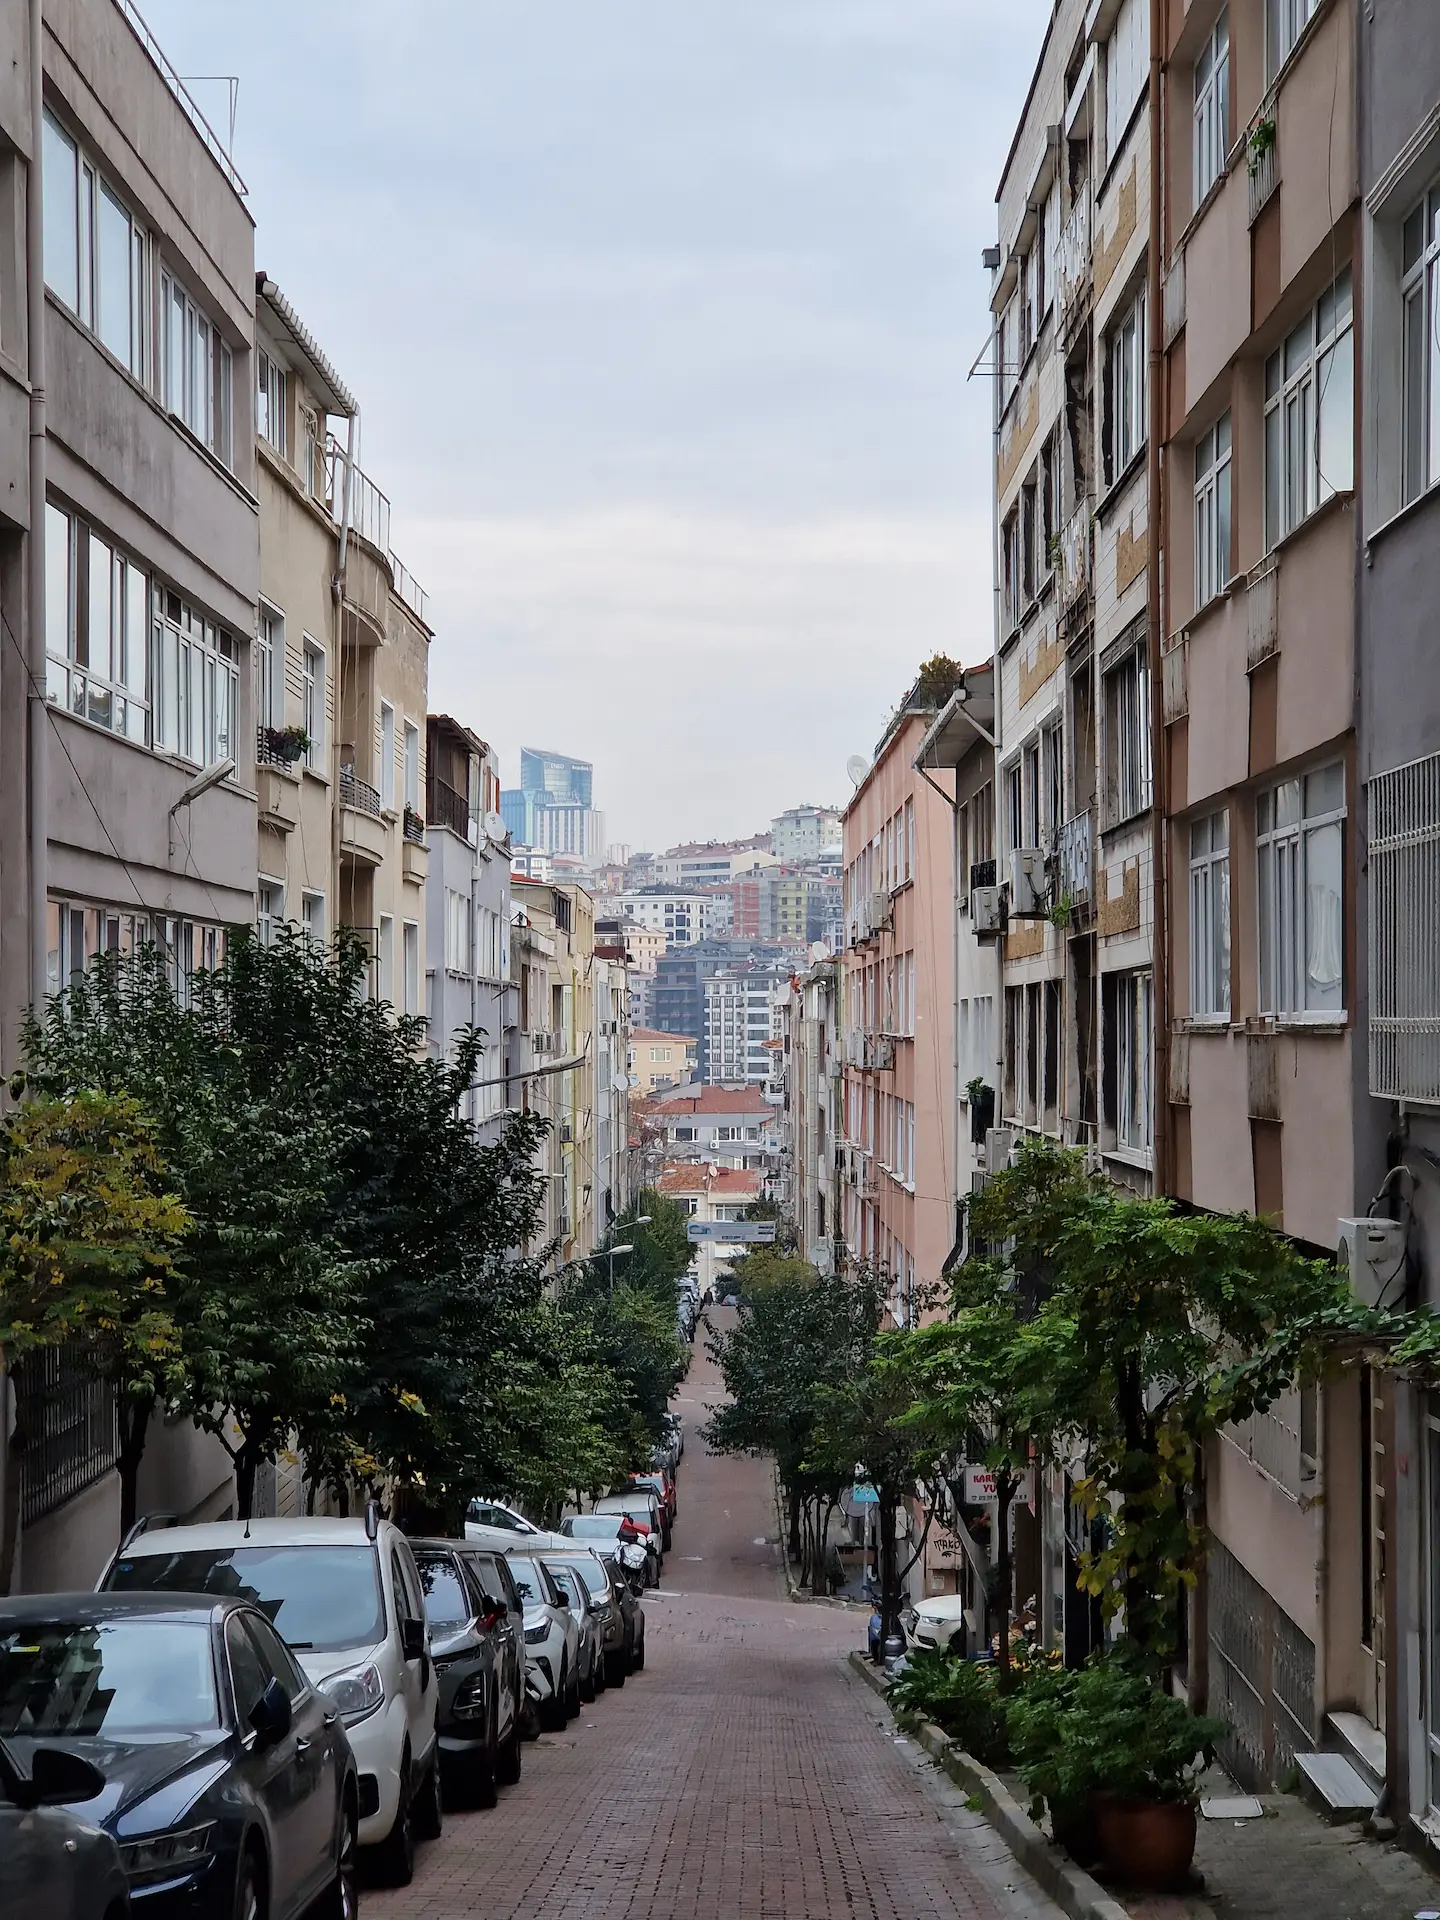 Une rue résidentielle en pente à Nişantaşi, entre des immeubles de quatre ou cinq étages. Il y a des arbres plantés des deux côtés, les voitures sont bien parquées d'un seul côté, pas un chat dans la rue.